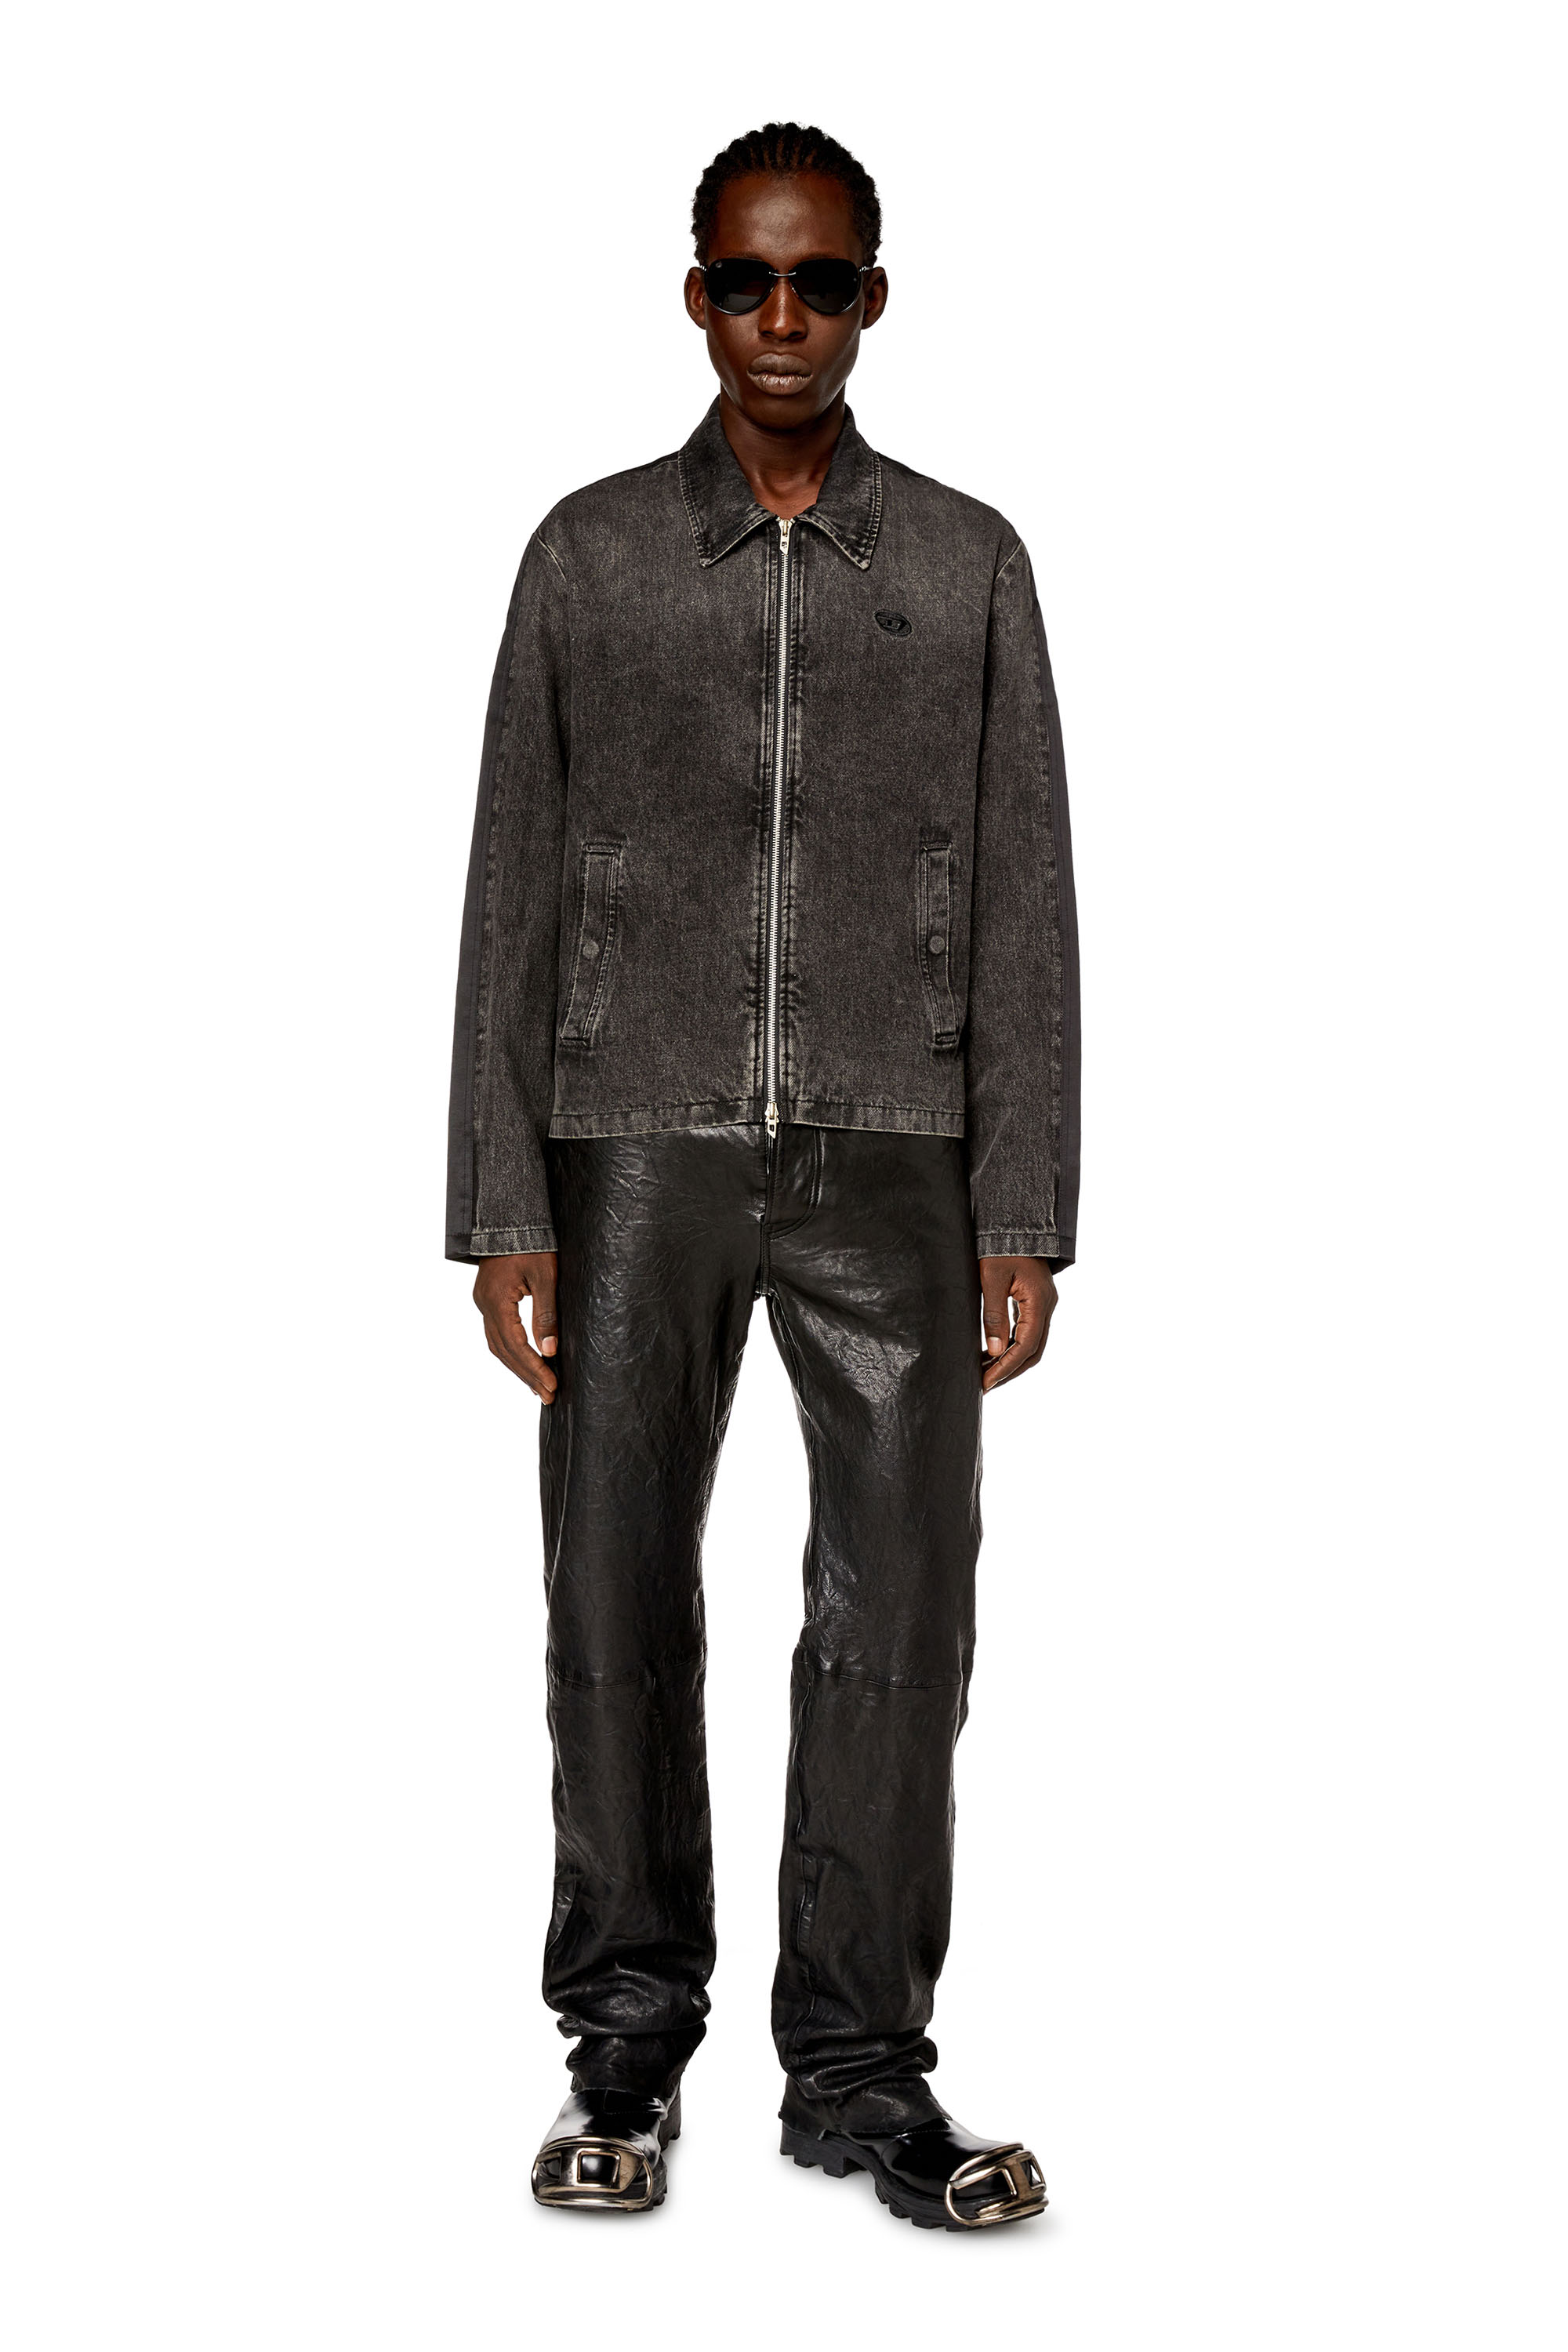 Diesel - J-HARRIS, Man Hybrid jacket in denim and twill in Black - Image 2